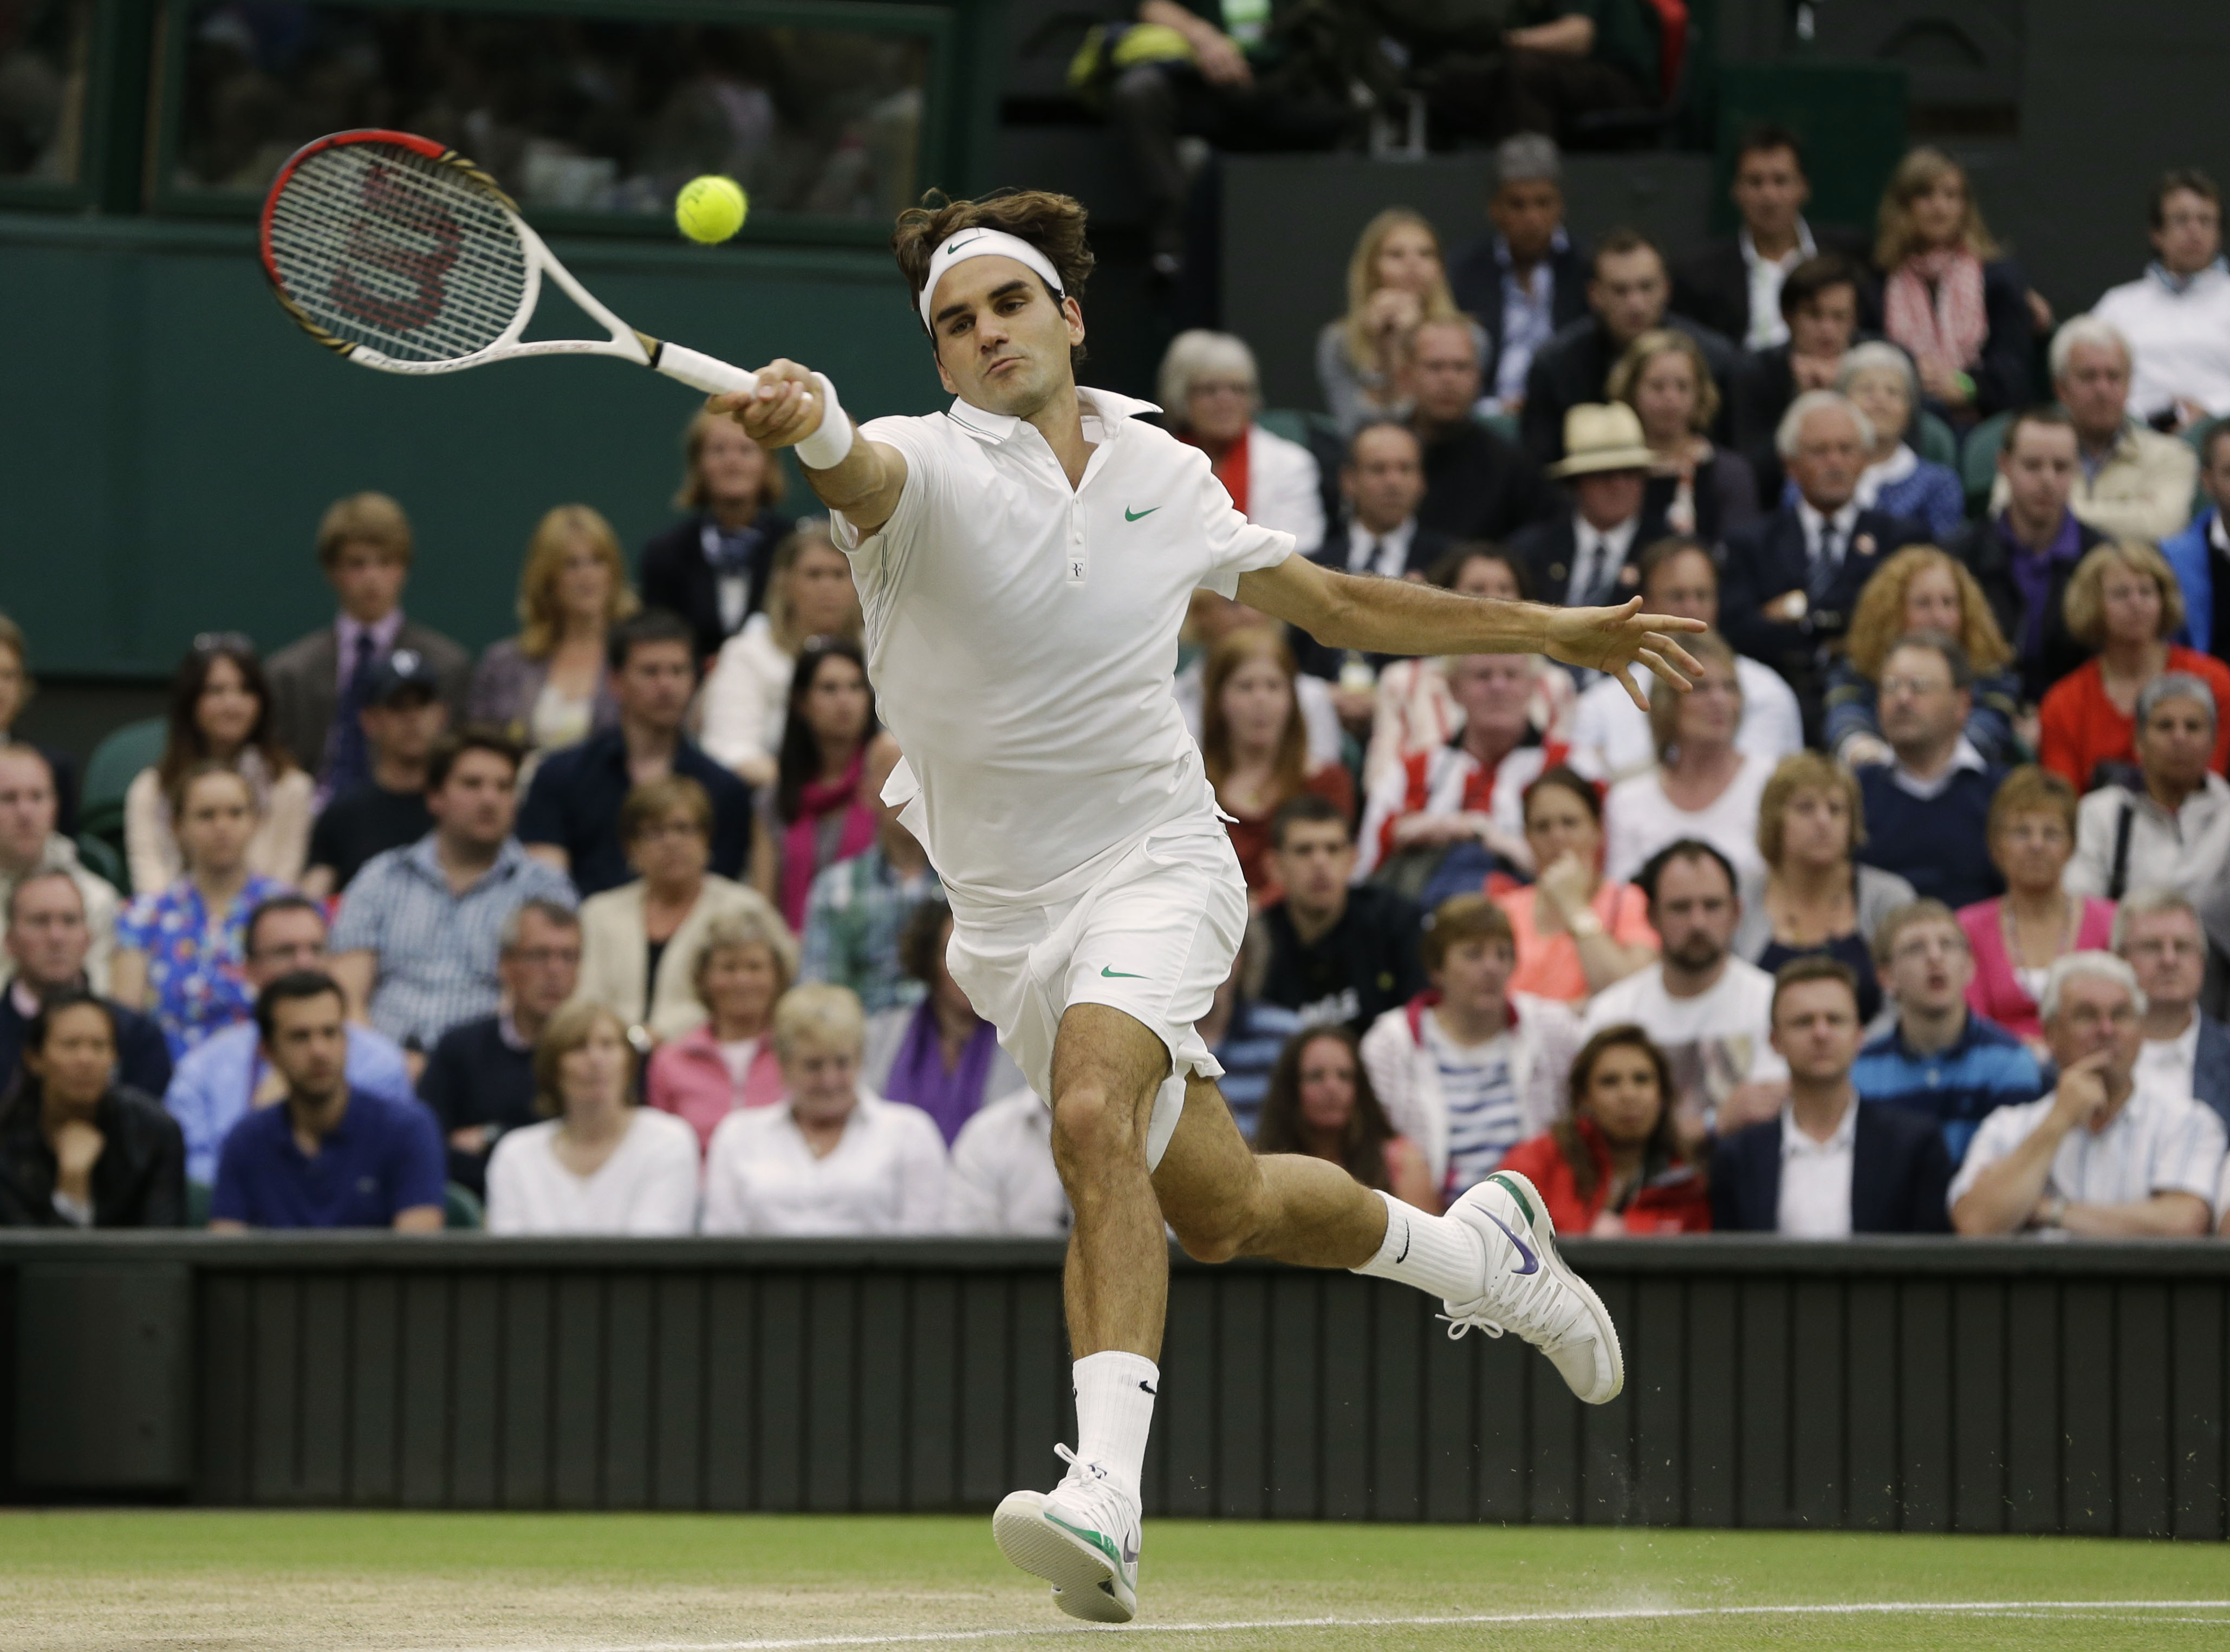 Tennis, Roger Federer, Världsetta, Andy Murray, Grand Slam, Wimbledon